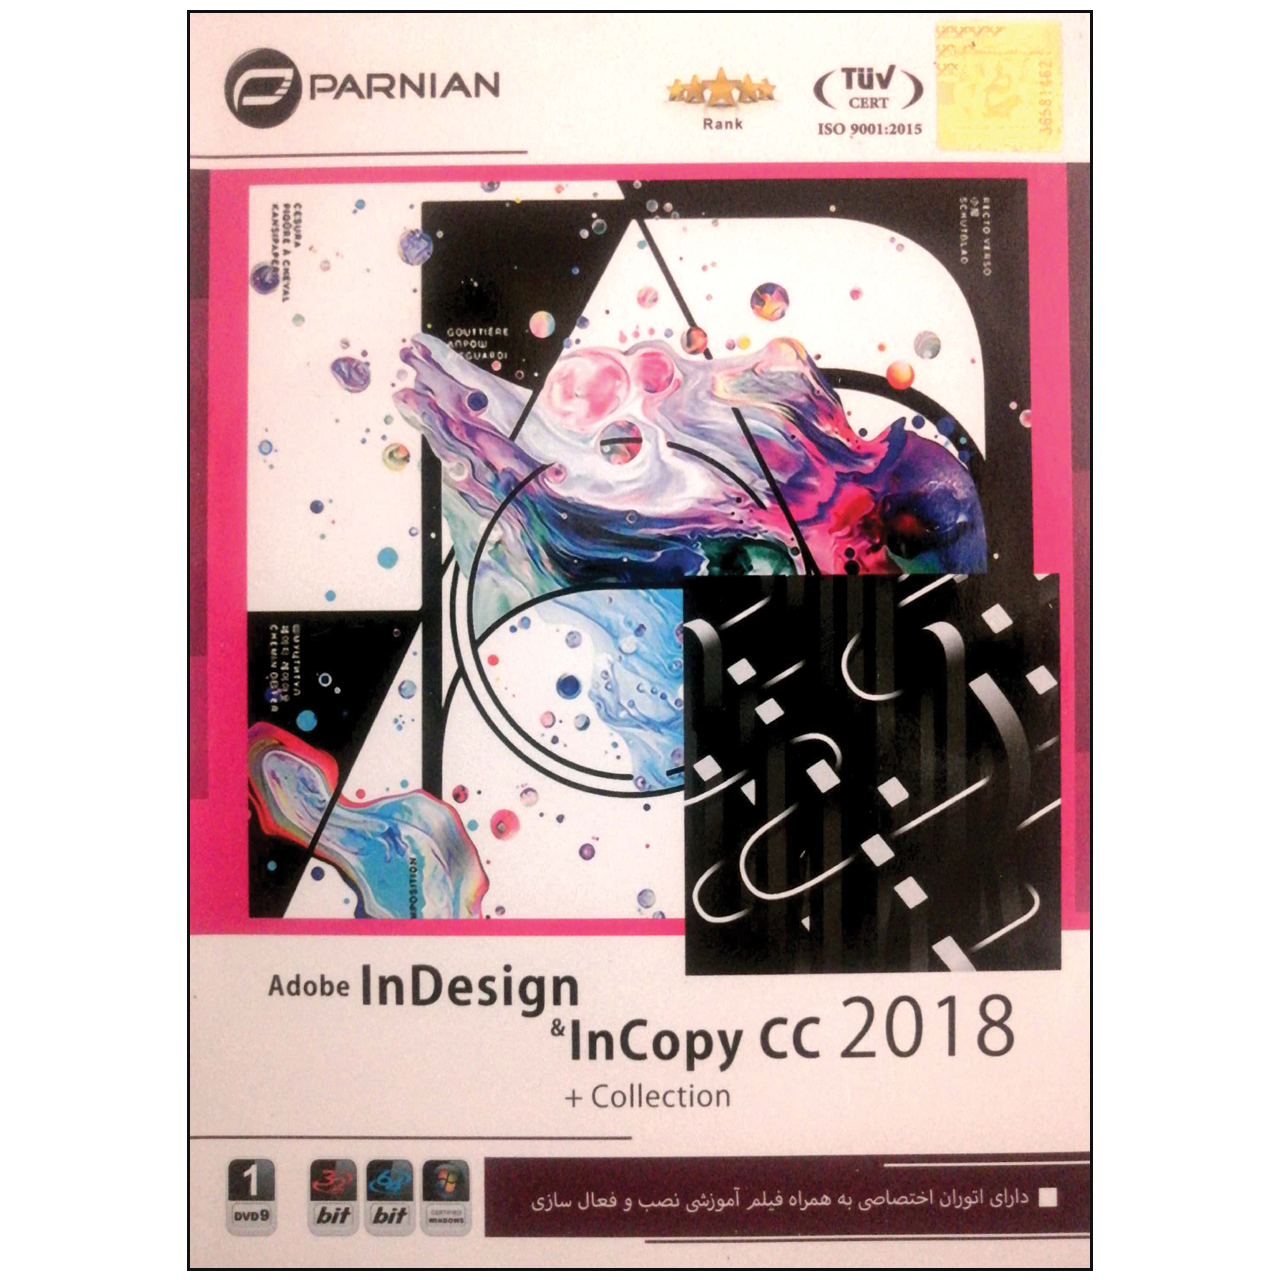 نرم افزار Adobe Indesign CC 2018 نشر پرنیان